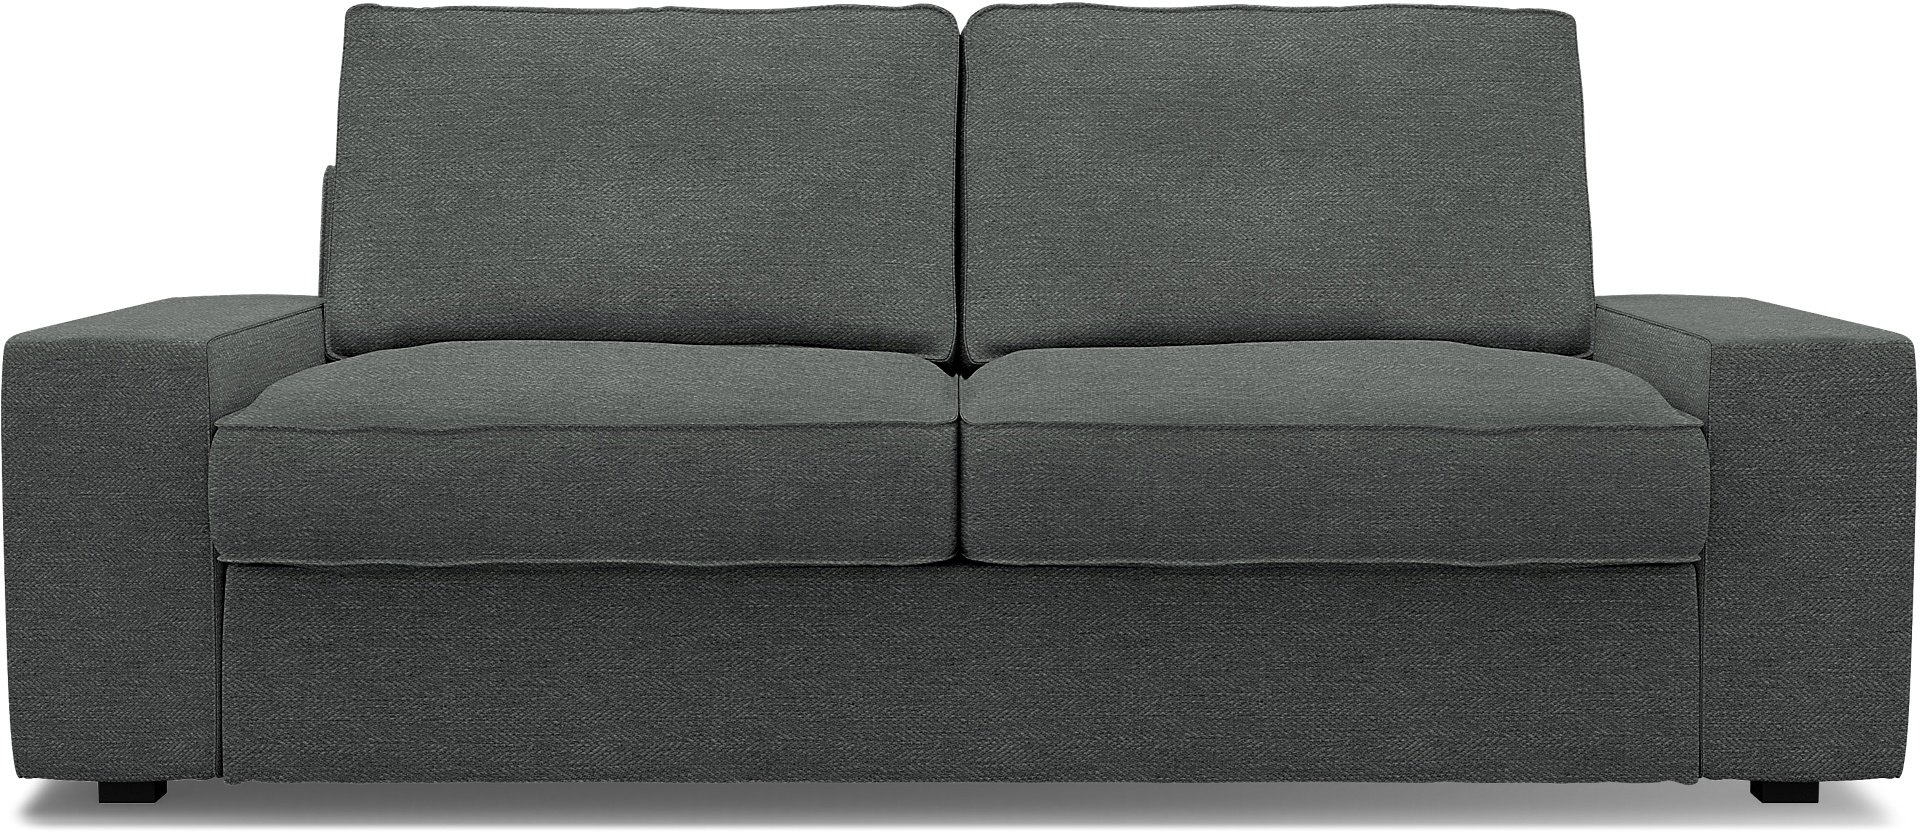 IKEA - Kivik 2 Seater Sofa Cover, Laurel, Boucle & Texture - Bemz